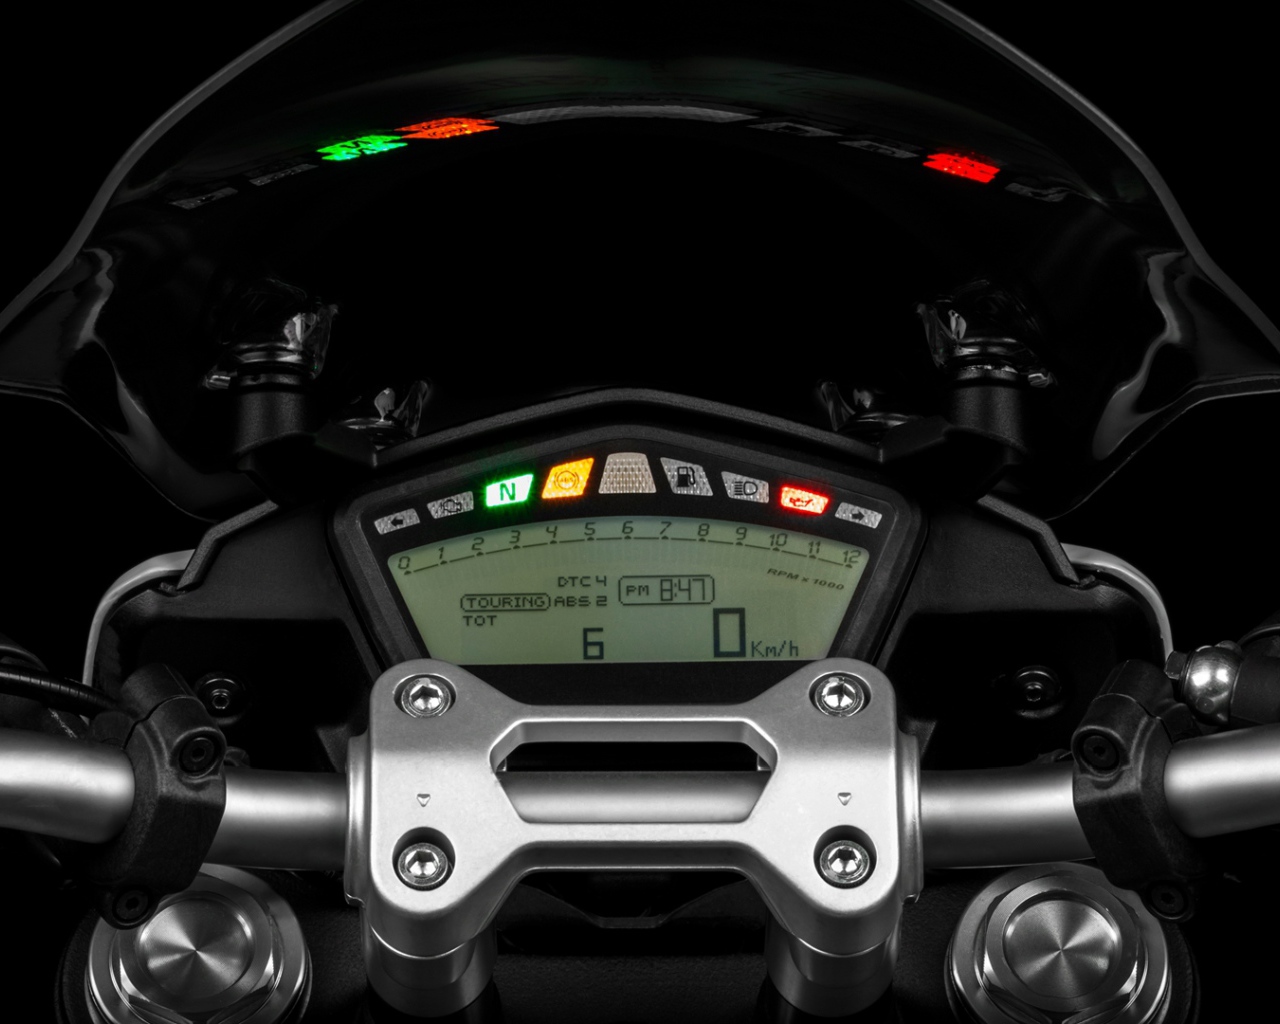 Красивый мотоцикл в москве Ducati Hyperstrada